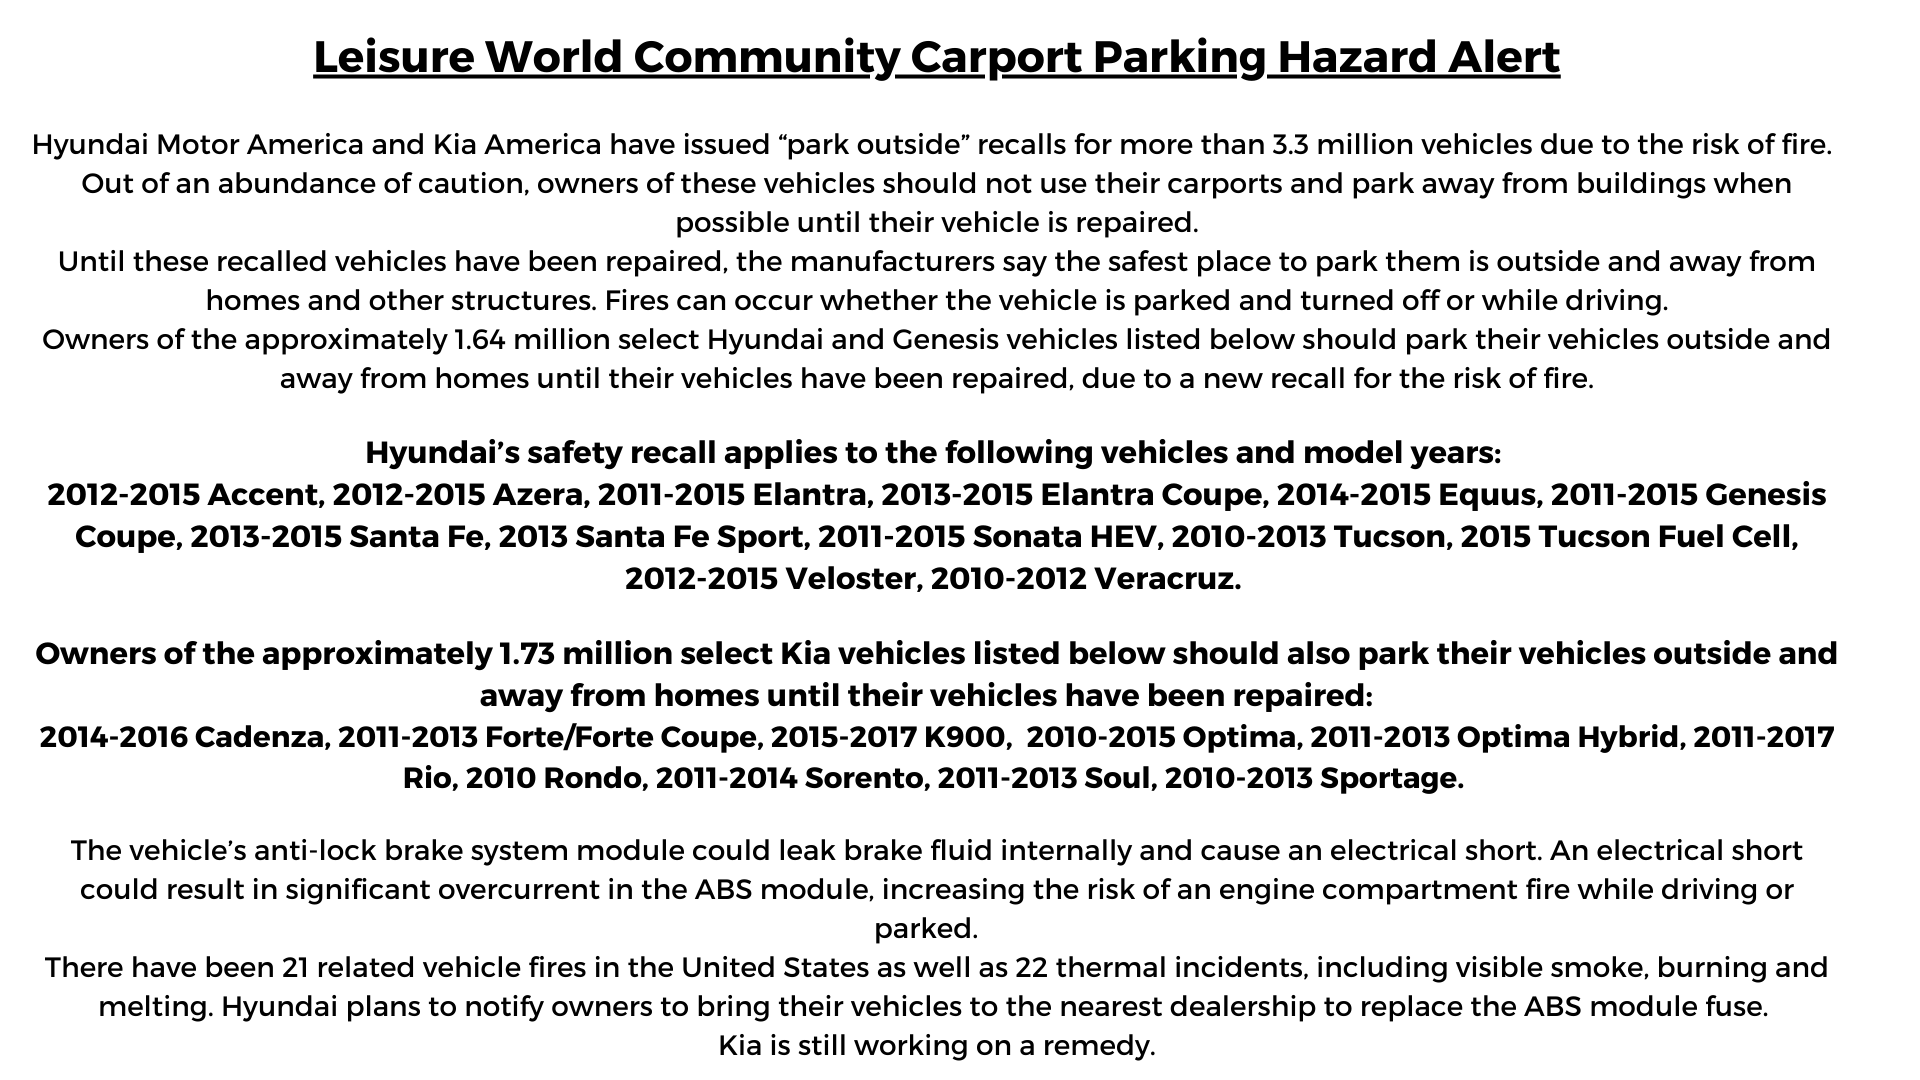 LW Carport Parking Hazard Alert